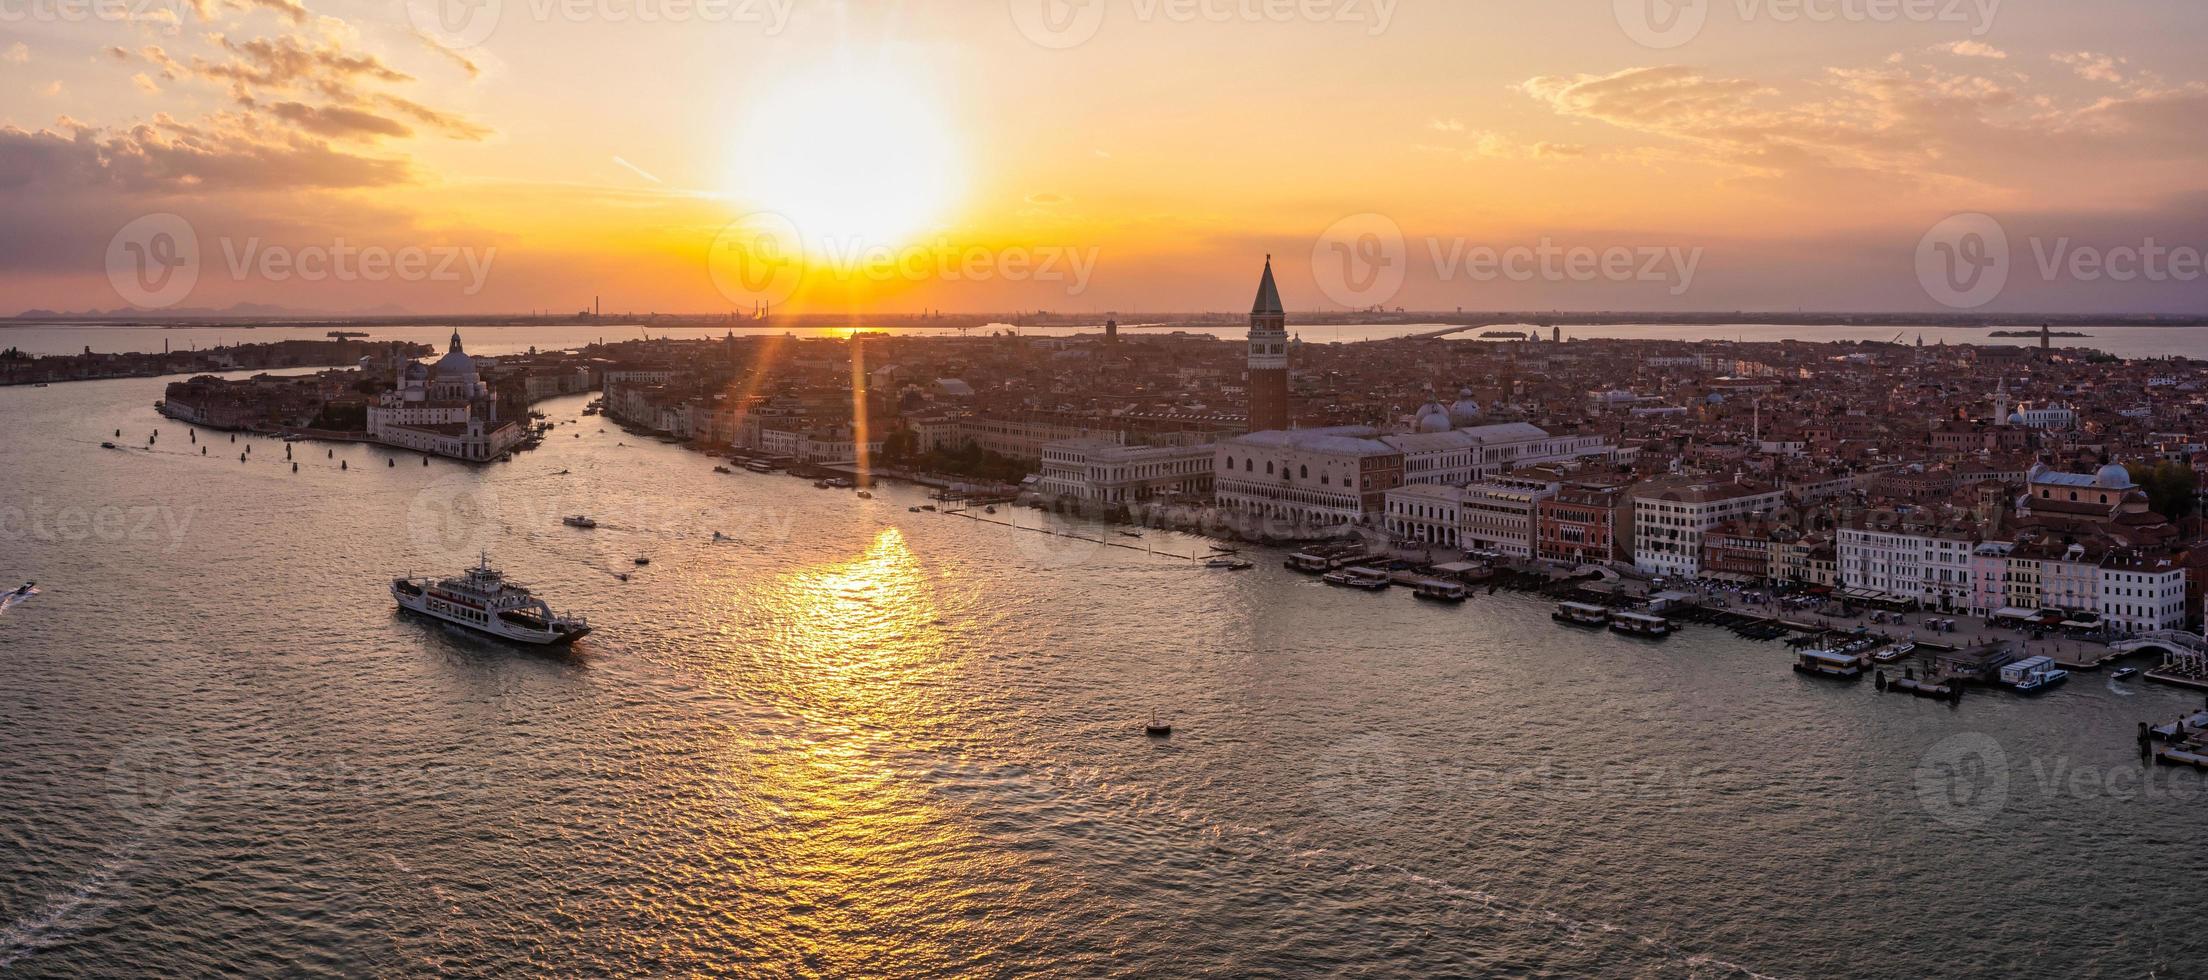 vista do pôr do sol da noite mágica sobre a bela veneza na itália. foto